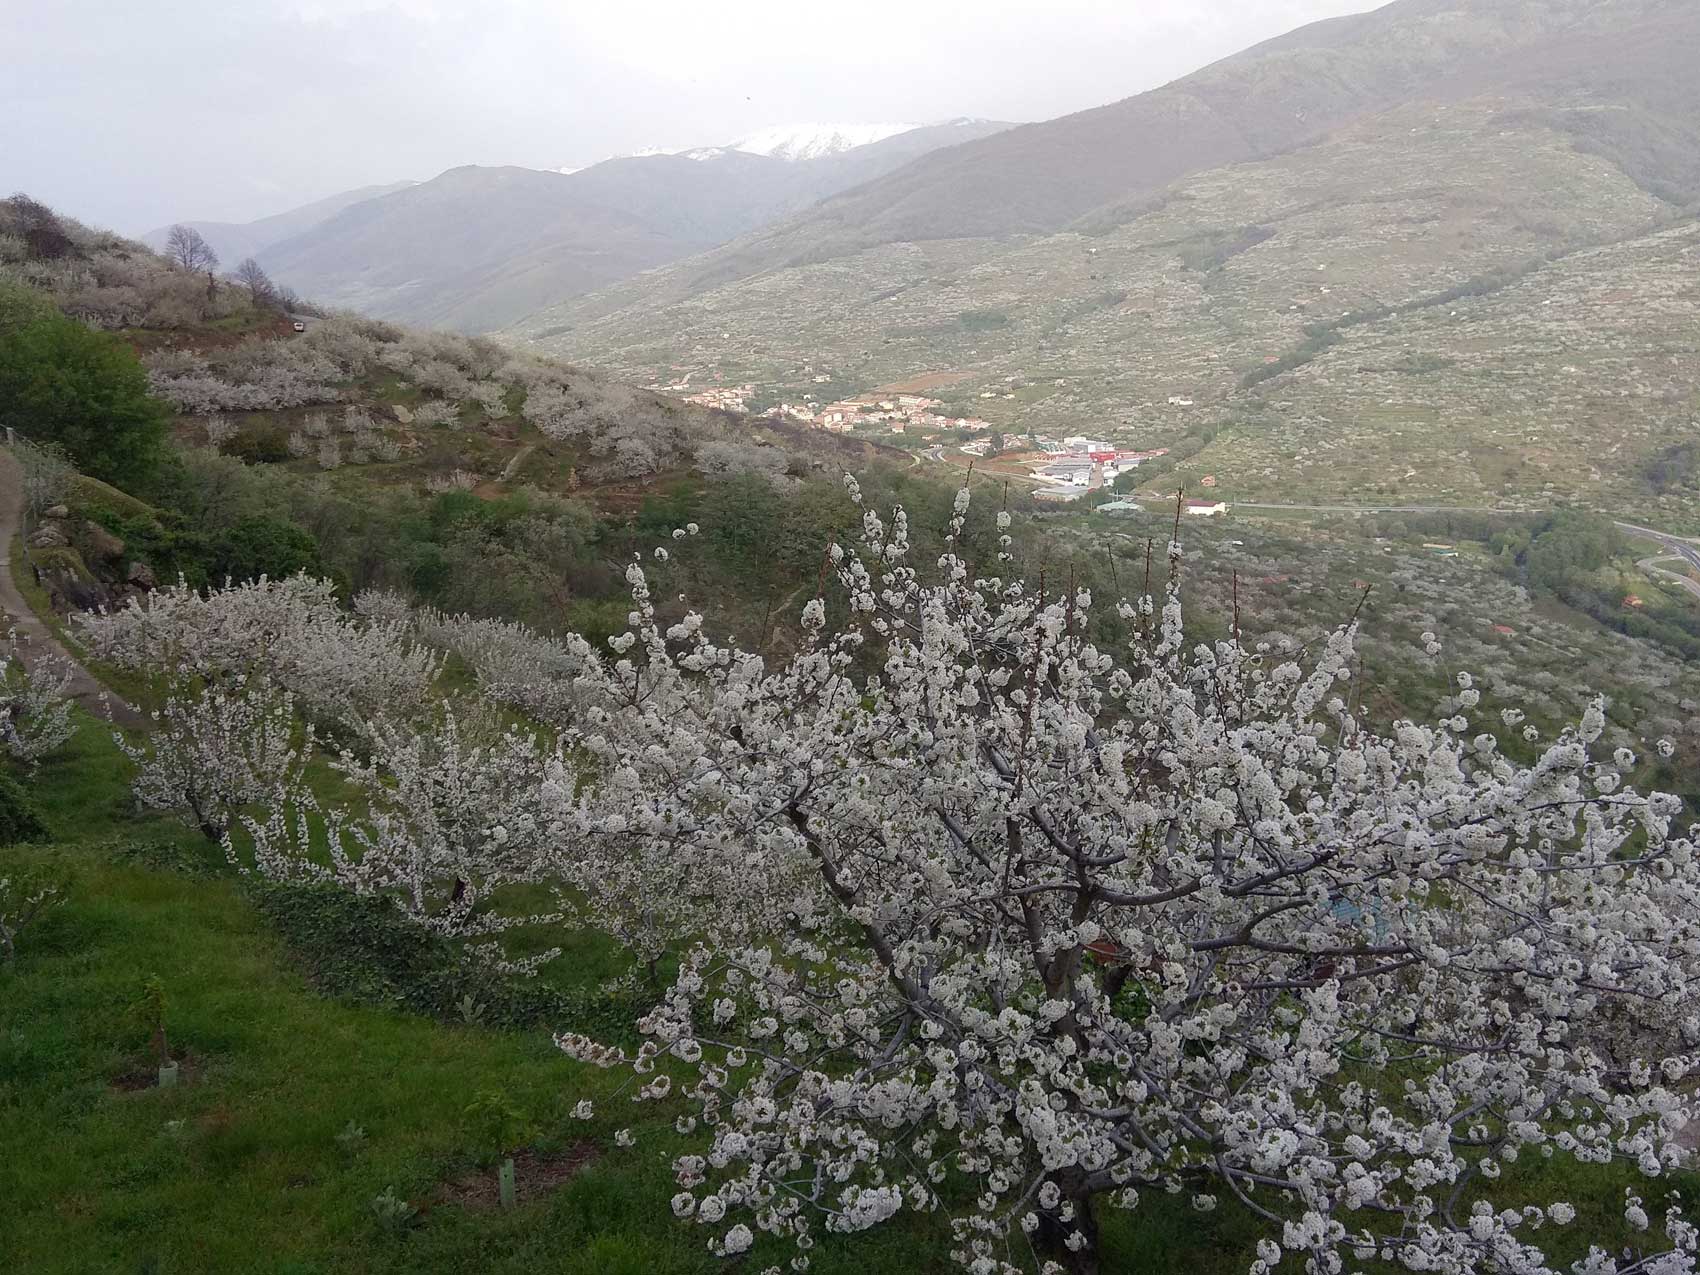 Foto 1. Vista panormica del Valle del Jerte con cerezos en flor